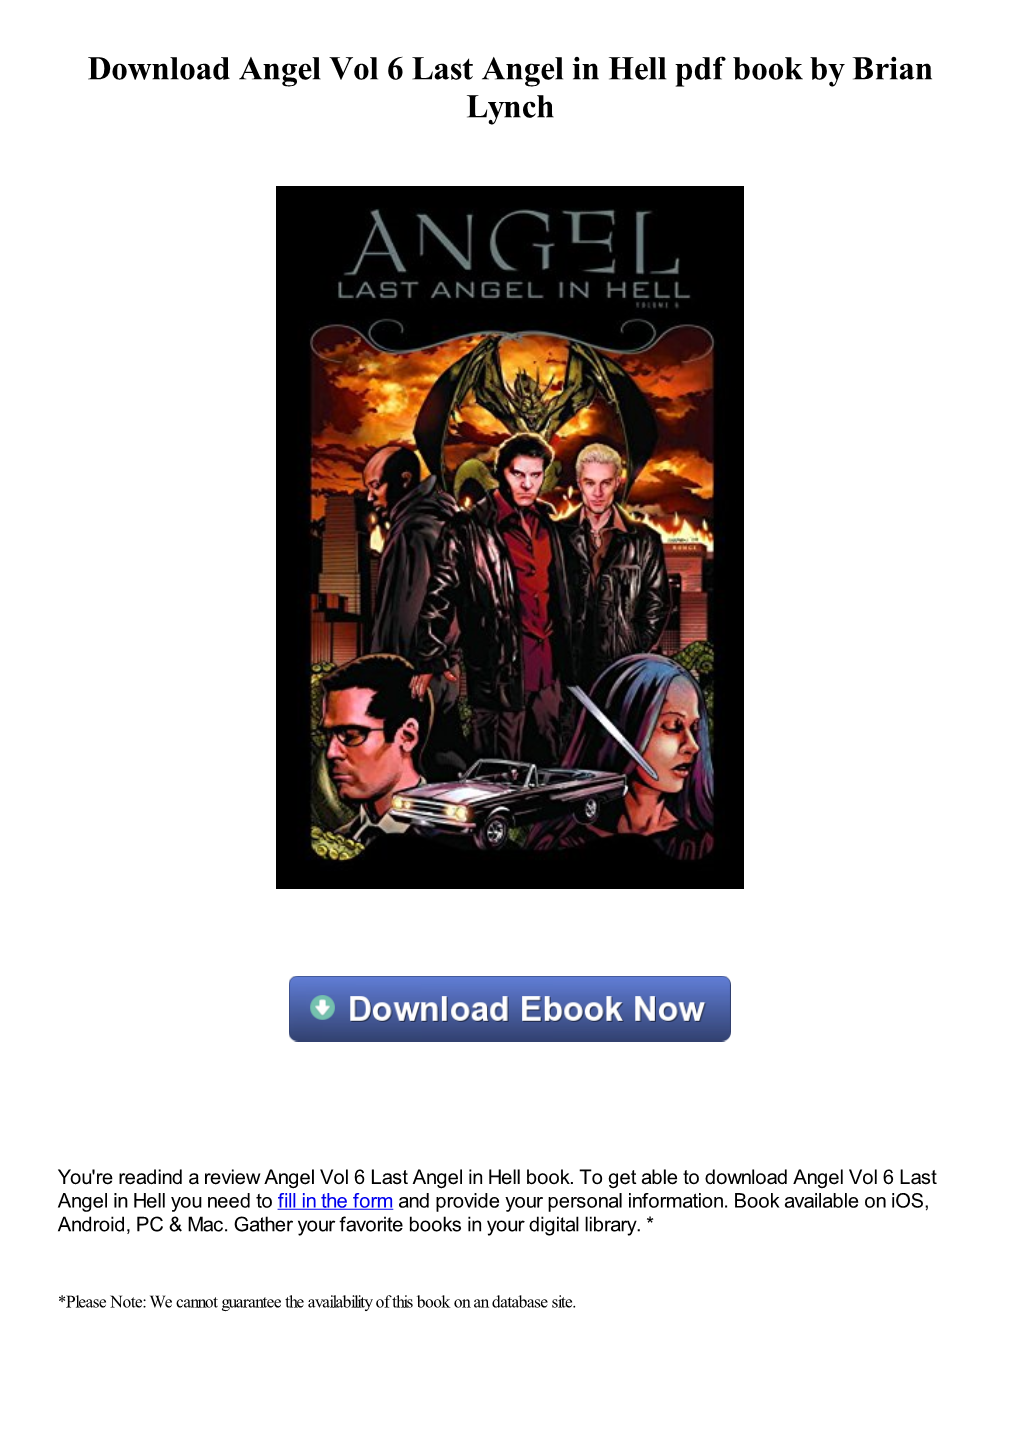 Download Angel Vol 6 Last Angel in Hell Pdf Ebook by Brian Lynch